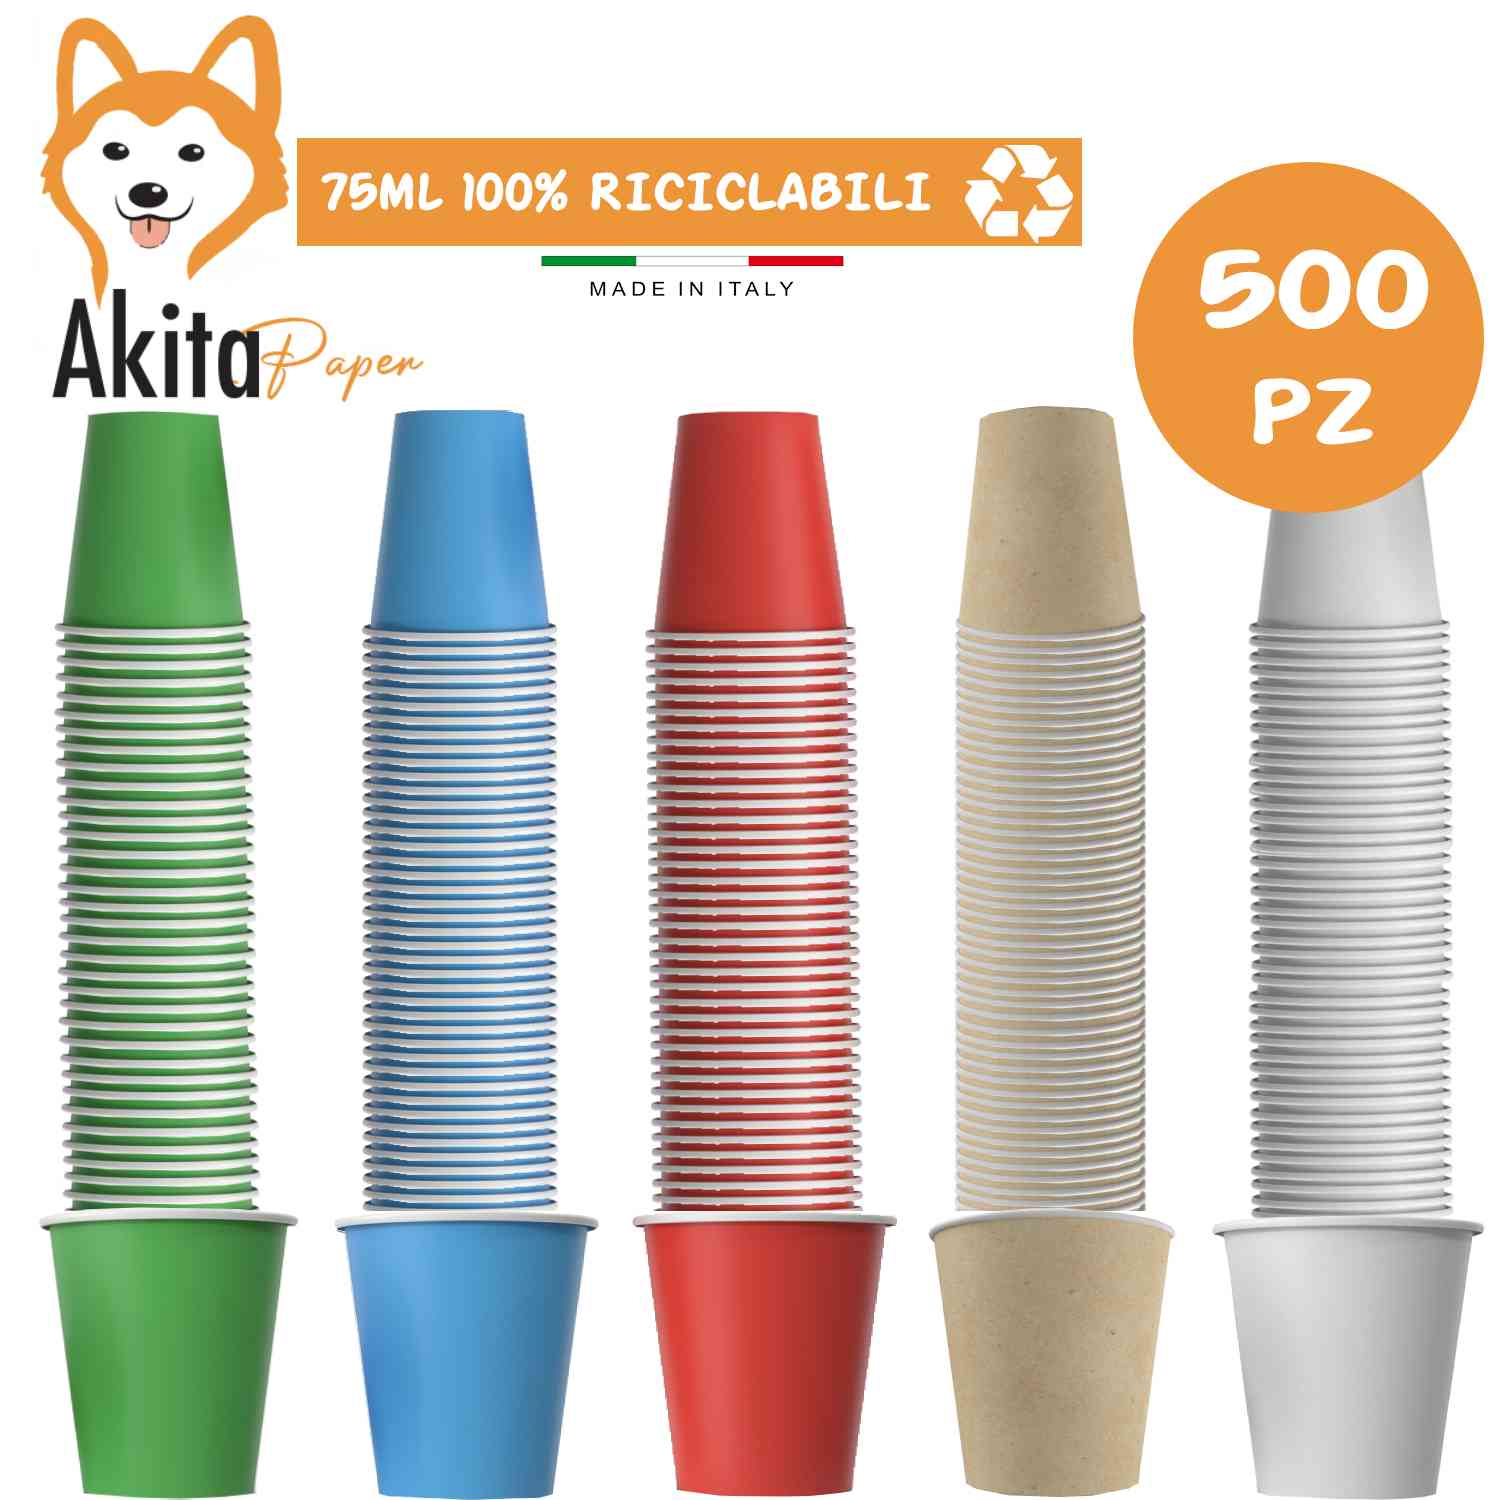 500 Bicchierini caffe' monouso di carta Biodegradabile e Compostabile da  75ml - Nonsoloinformatica